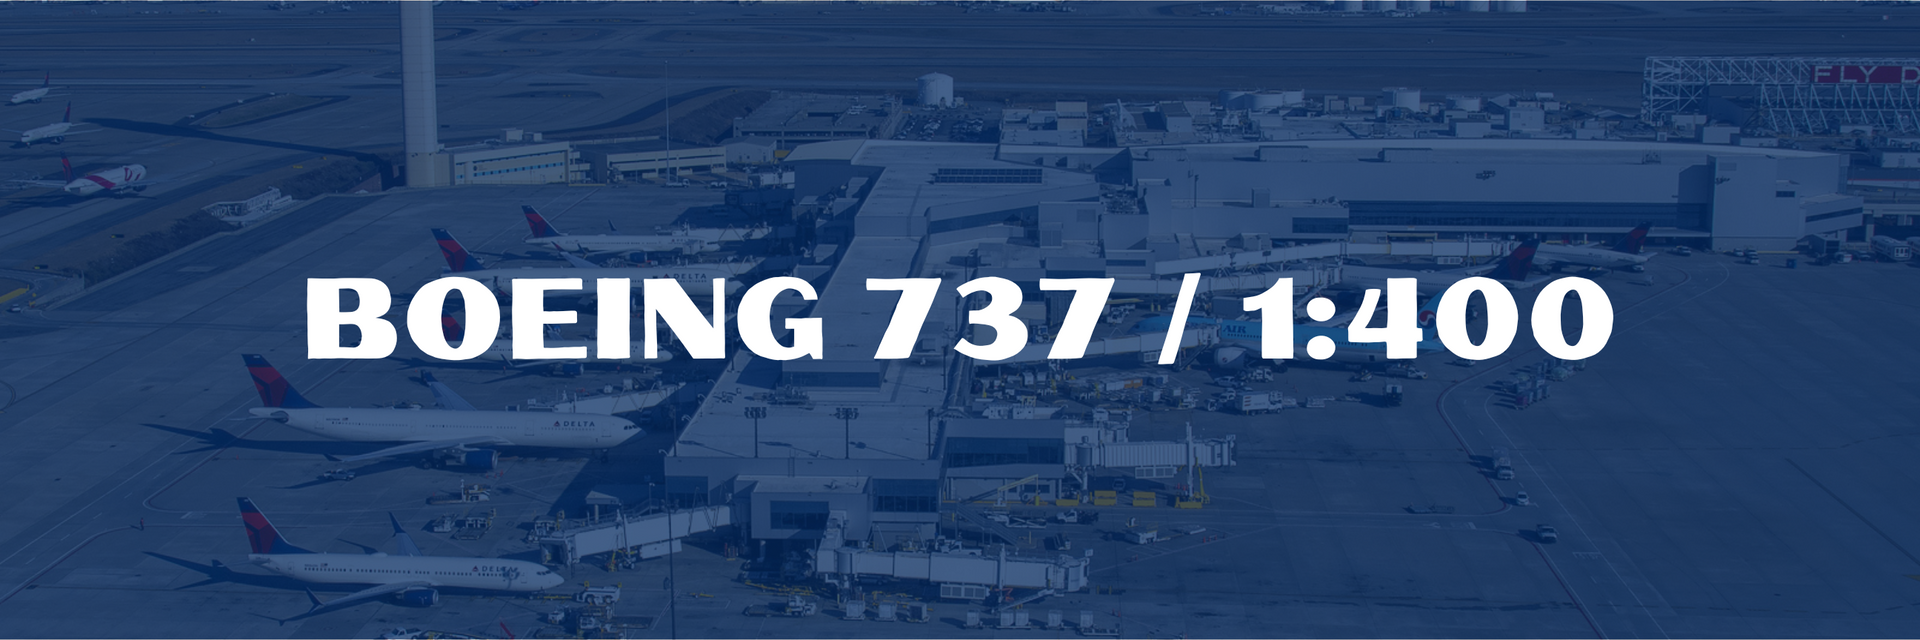 Boeing 737 / 1:400